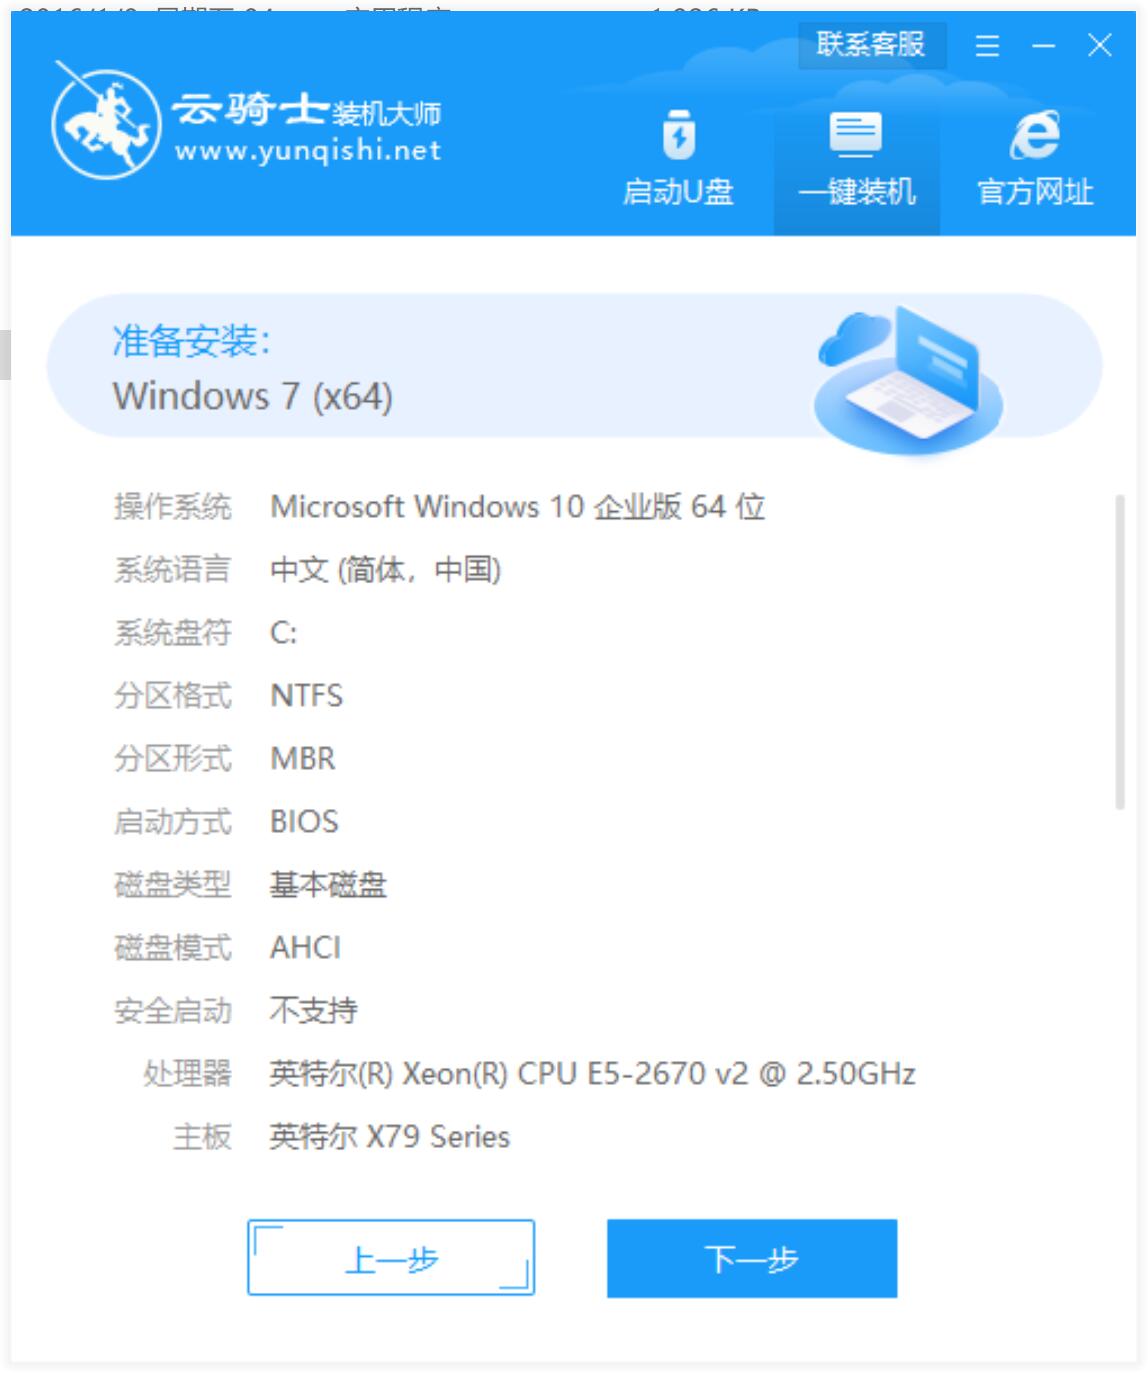 新版技术员联盟系统 GHOST Window7 X64 SP1 纯净中文旗舰版系统下载 V2022.11(6)